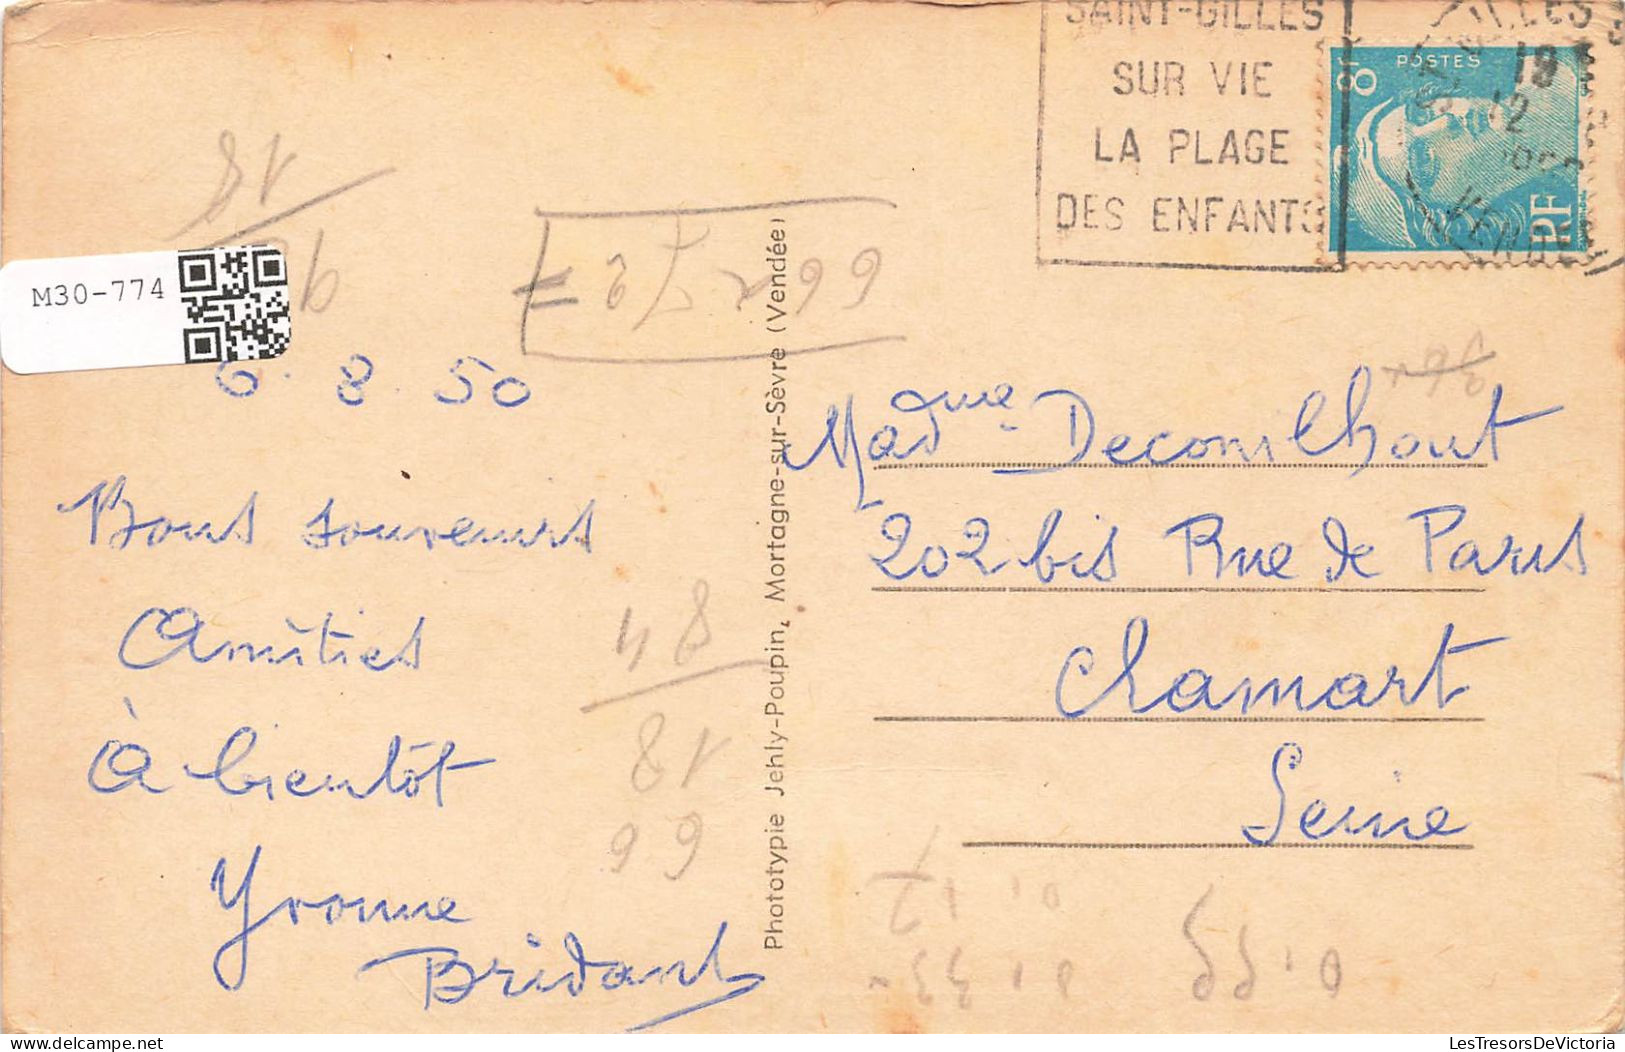 FRANCE - Sion Sur L'Océan - La Petite Plage - Carte Postale Ancienne - Autres & Non Classés